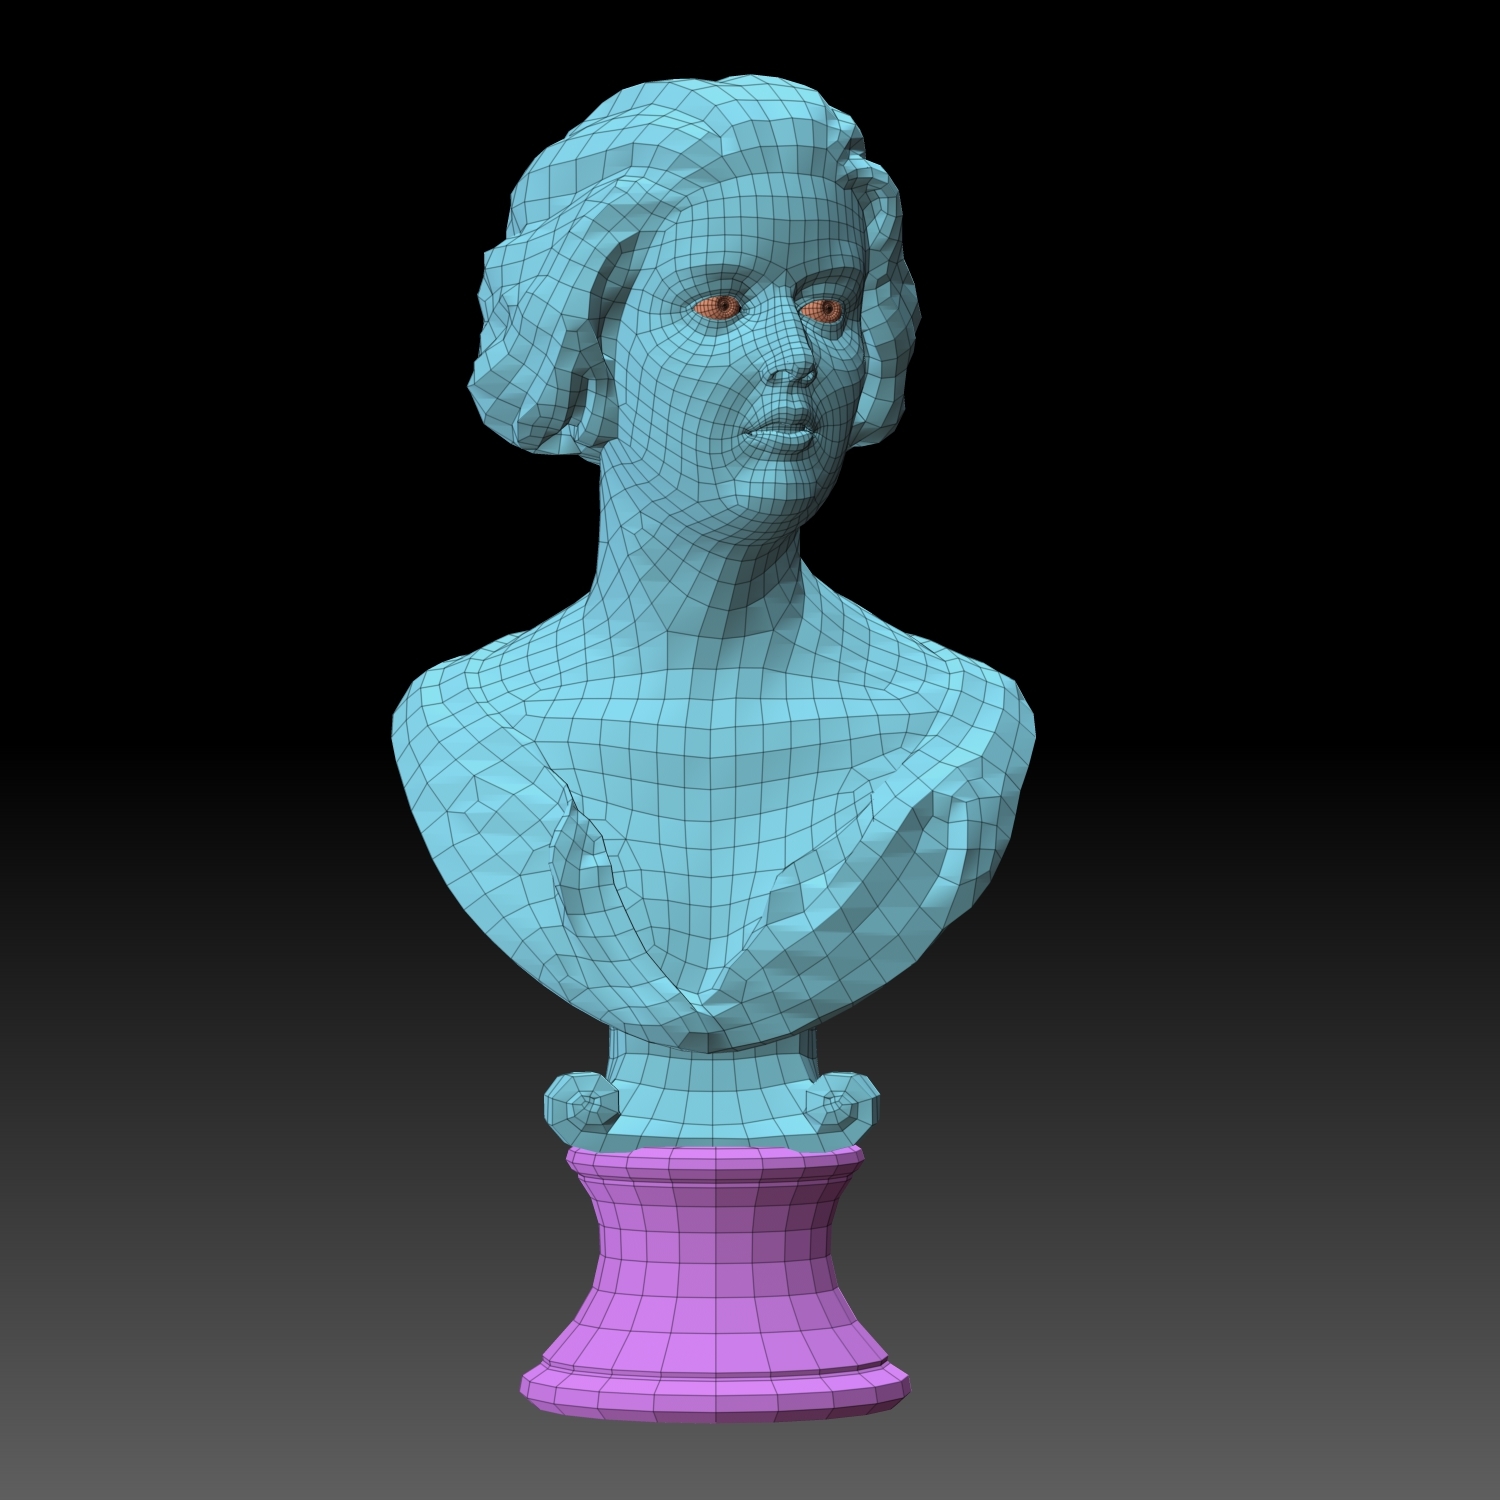 2019最新美女3D模型参考素材-盛绘艺点-盛绘艺点官网丨专业游戏美术3D建模次世代培训机构